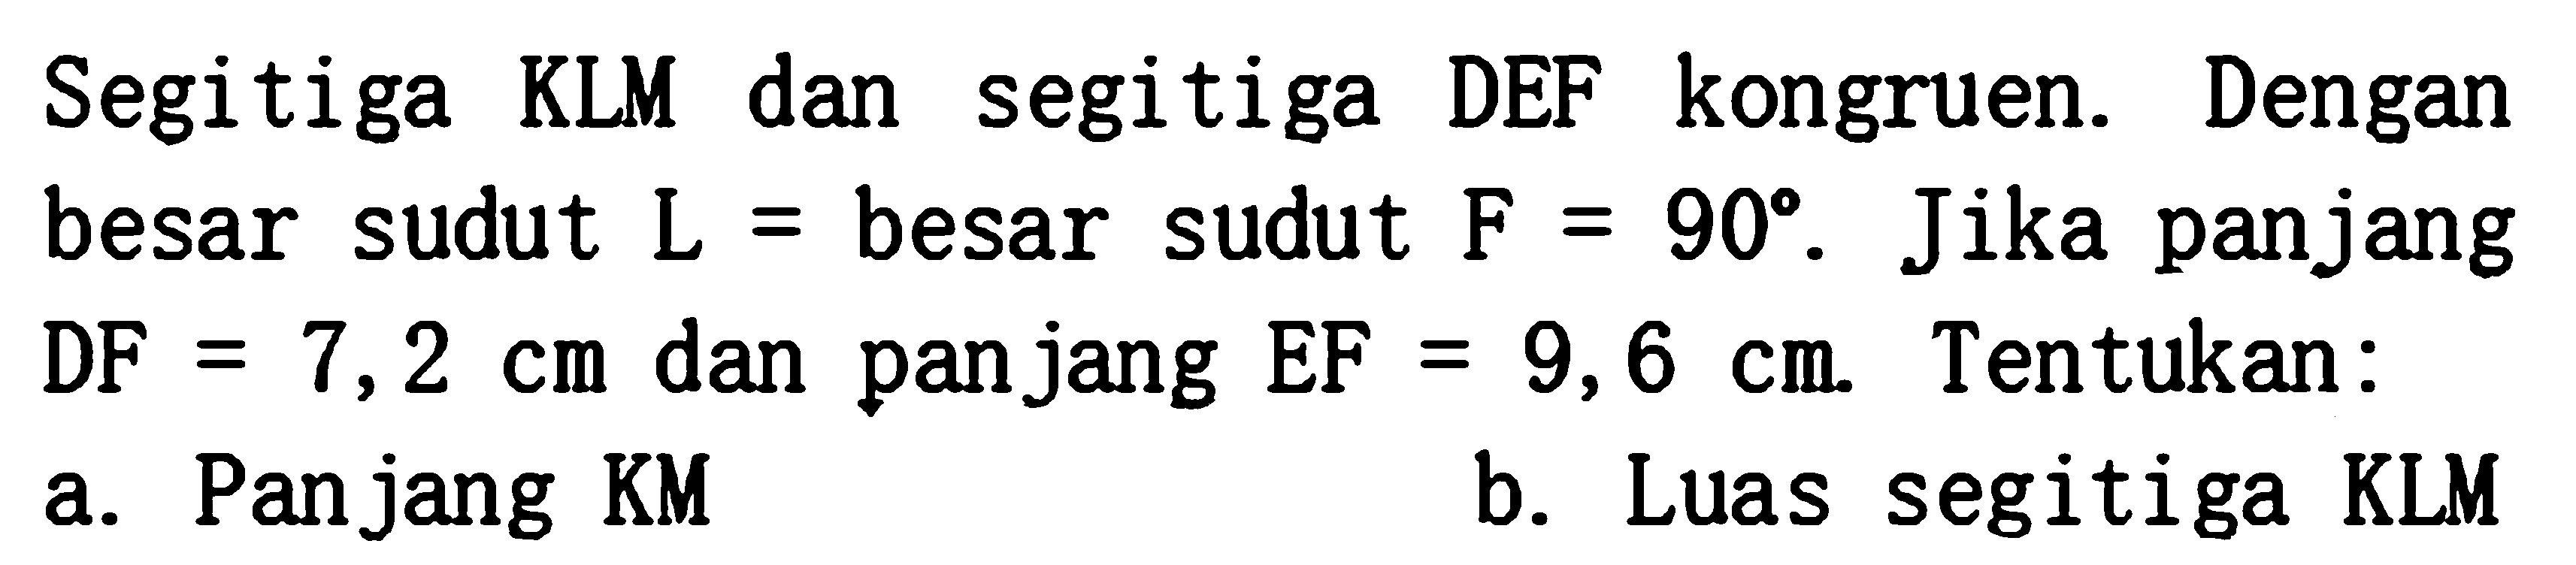 Segitiga KLM dan segitiga DEF kongruen. Dengan besar sudut L = besar sudut F = 90. Jika panjang DF = 7,2 cm dan panjang EF = 9,6 cm. Tentukan: a. Panjang KM b. Luas segitiga KLM 